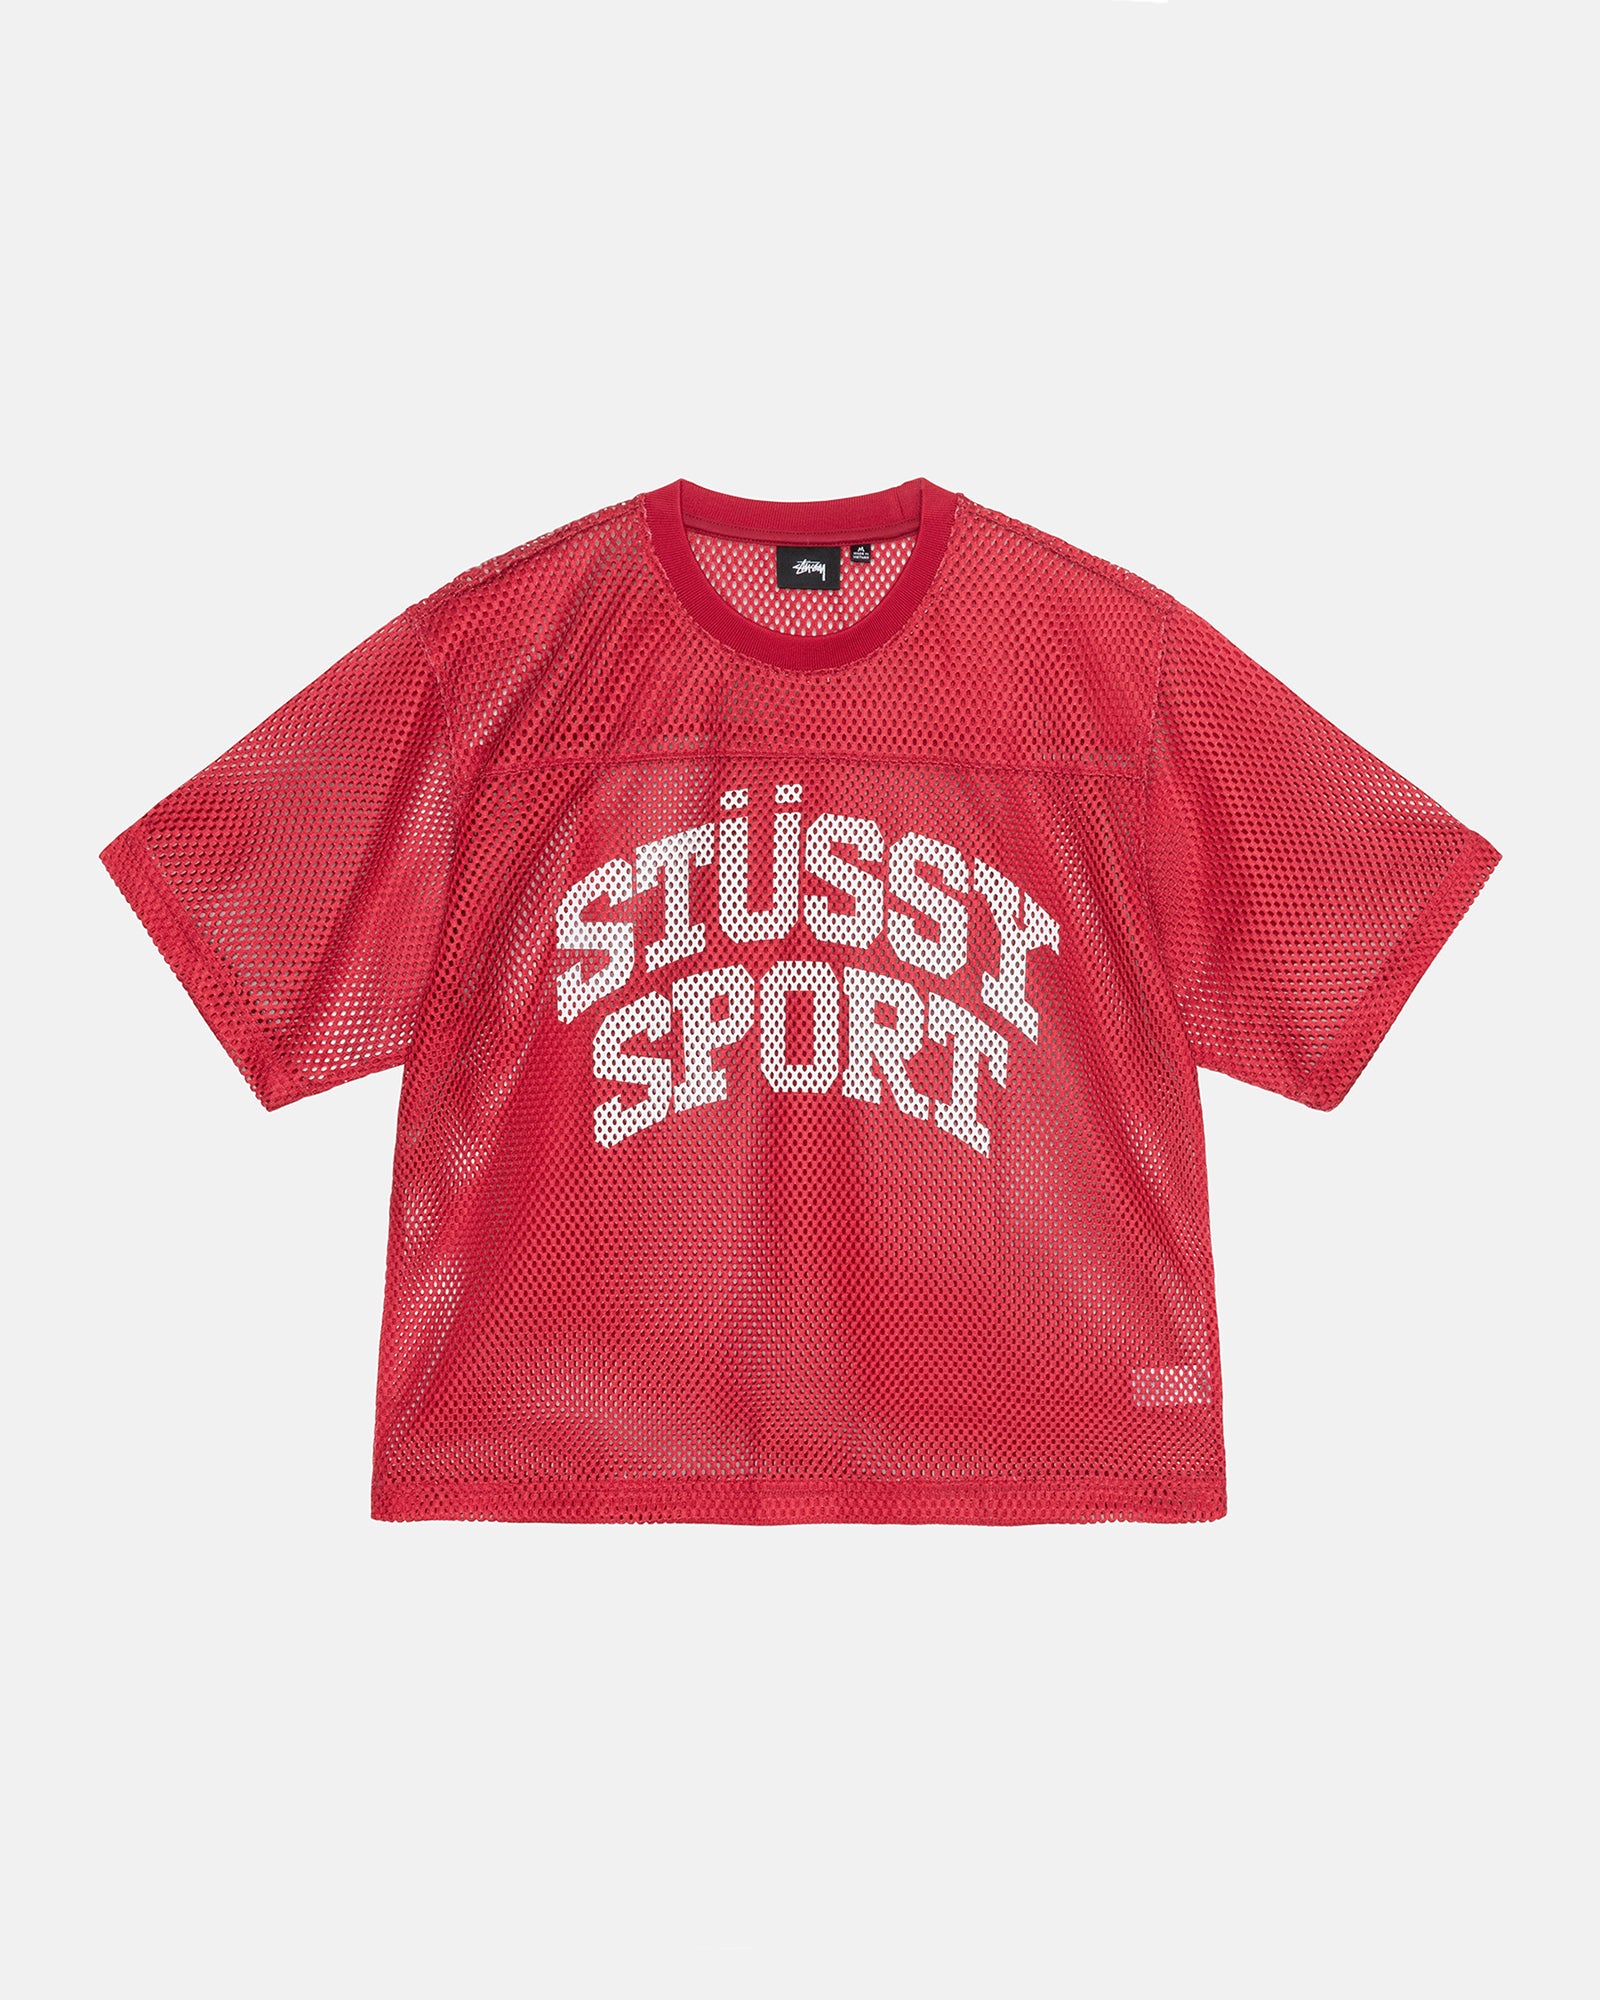 Stüssy Stüssy Sport Jersey Red Tops